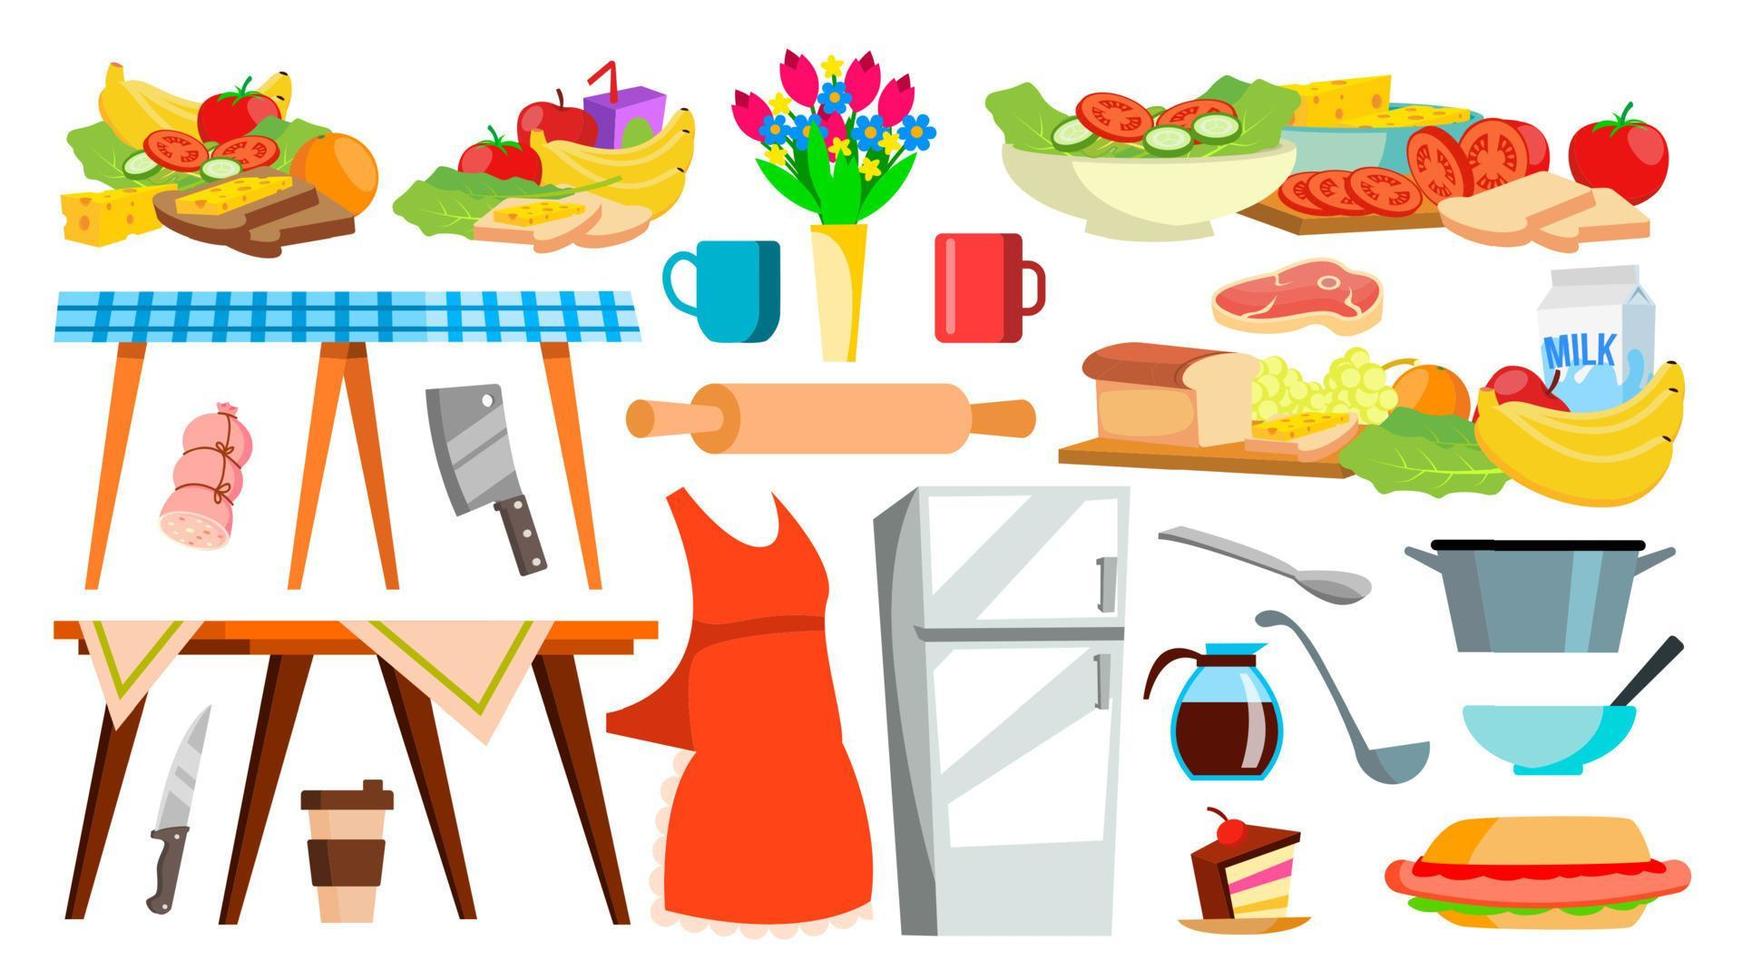 Symbolvektor für Küchengeräte. Geschirr. Werkzeuge zum Kochen von Lebensmitteln. Haushaltsgeräte. isolierte karikaturillustration vektor